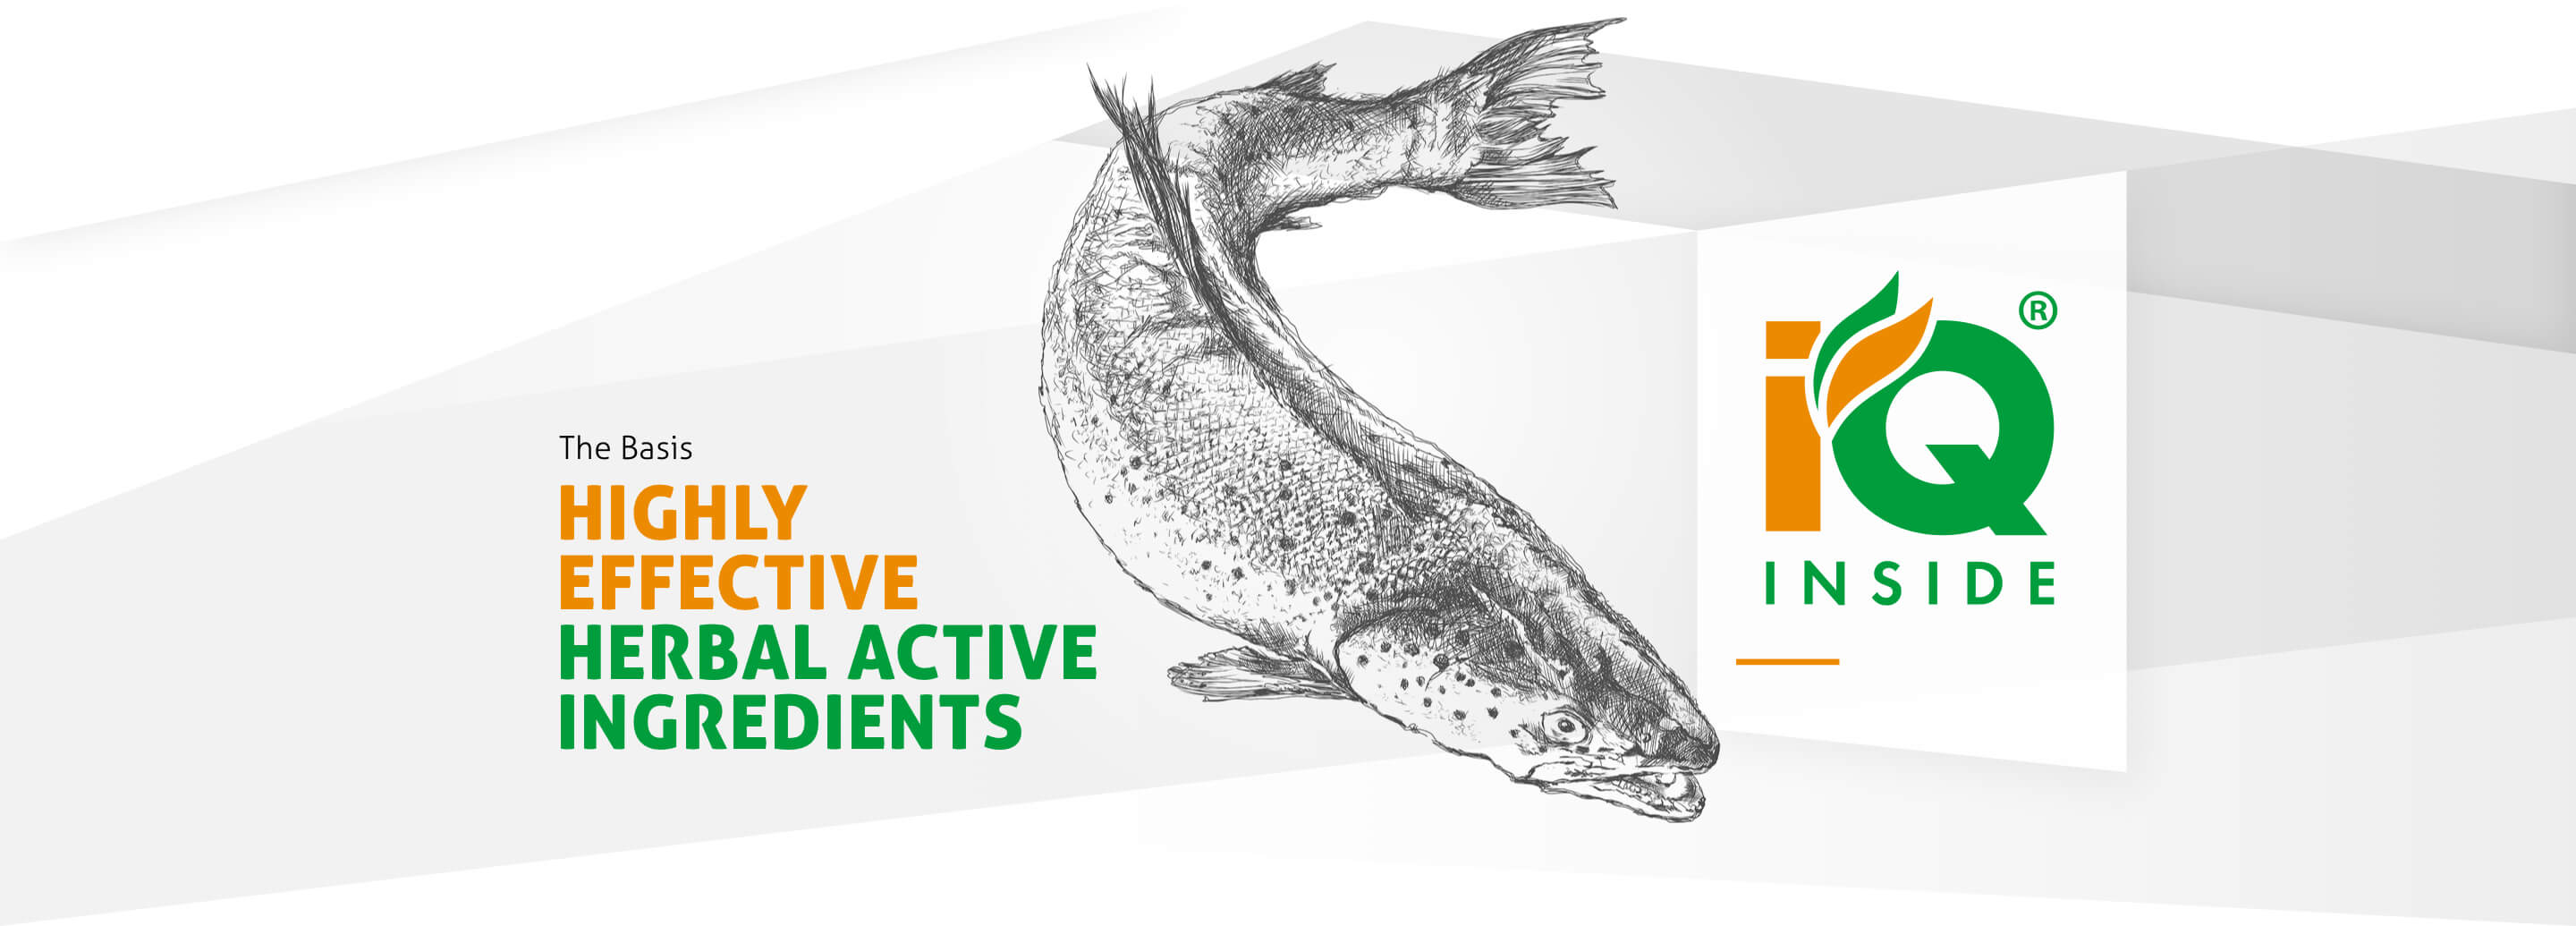 Ein schwarz-weiß gezeichneter Fisch. Neben dem Fisch steht der englische Claim “Highly effective herbal actice Ingredients”.